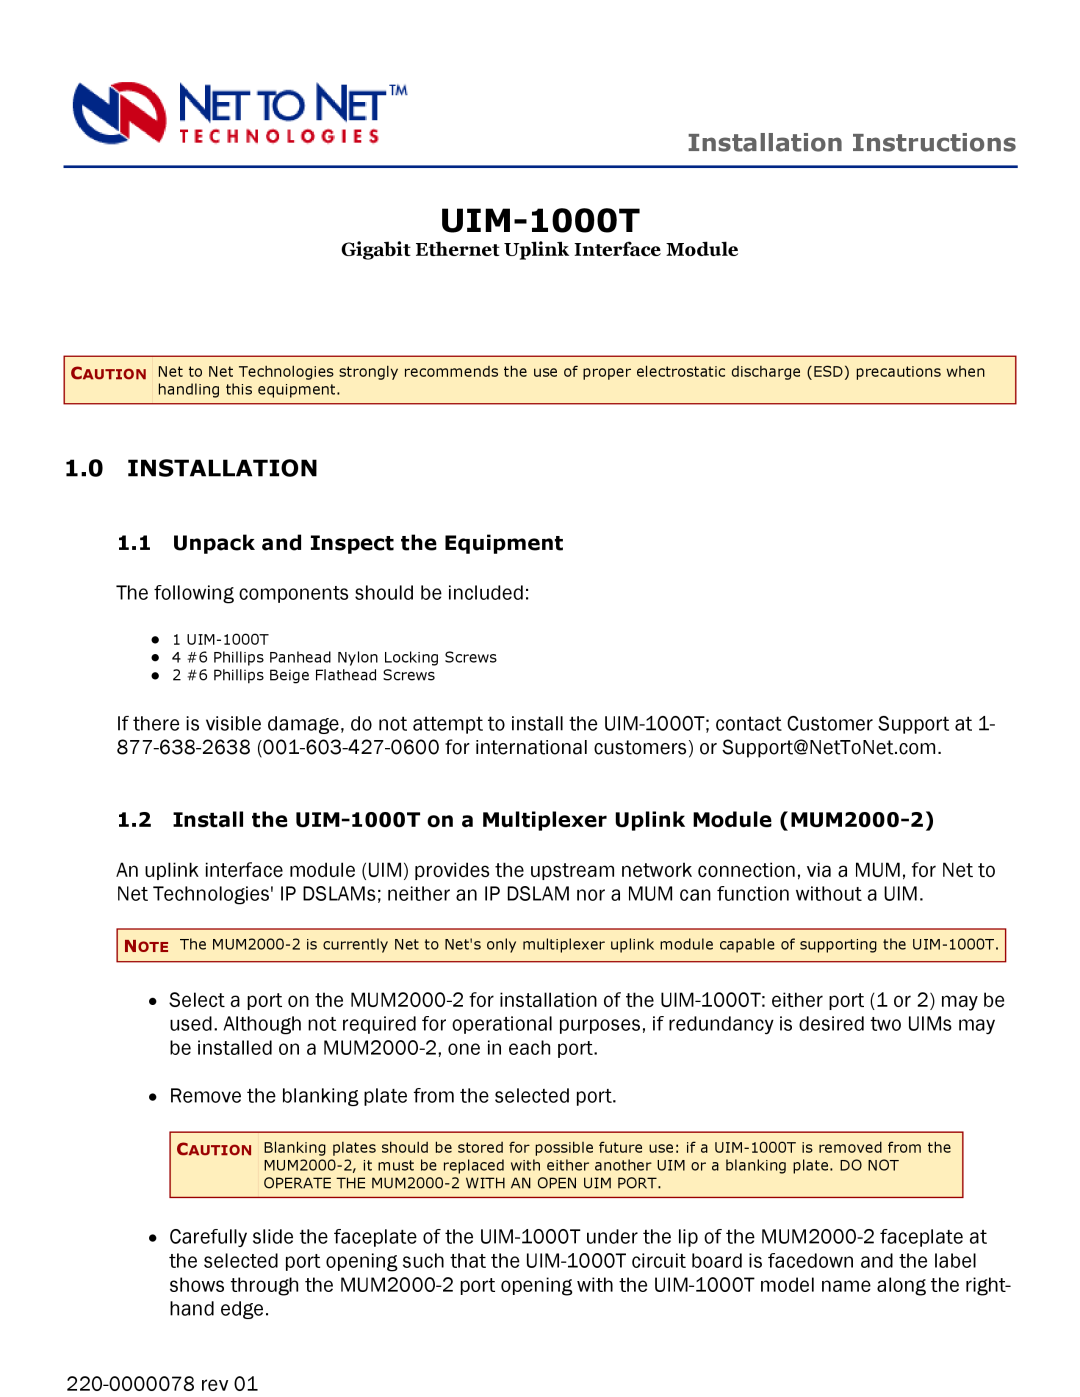 Paradyne UIM-1000T installation instructions Installation Instructions 